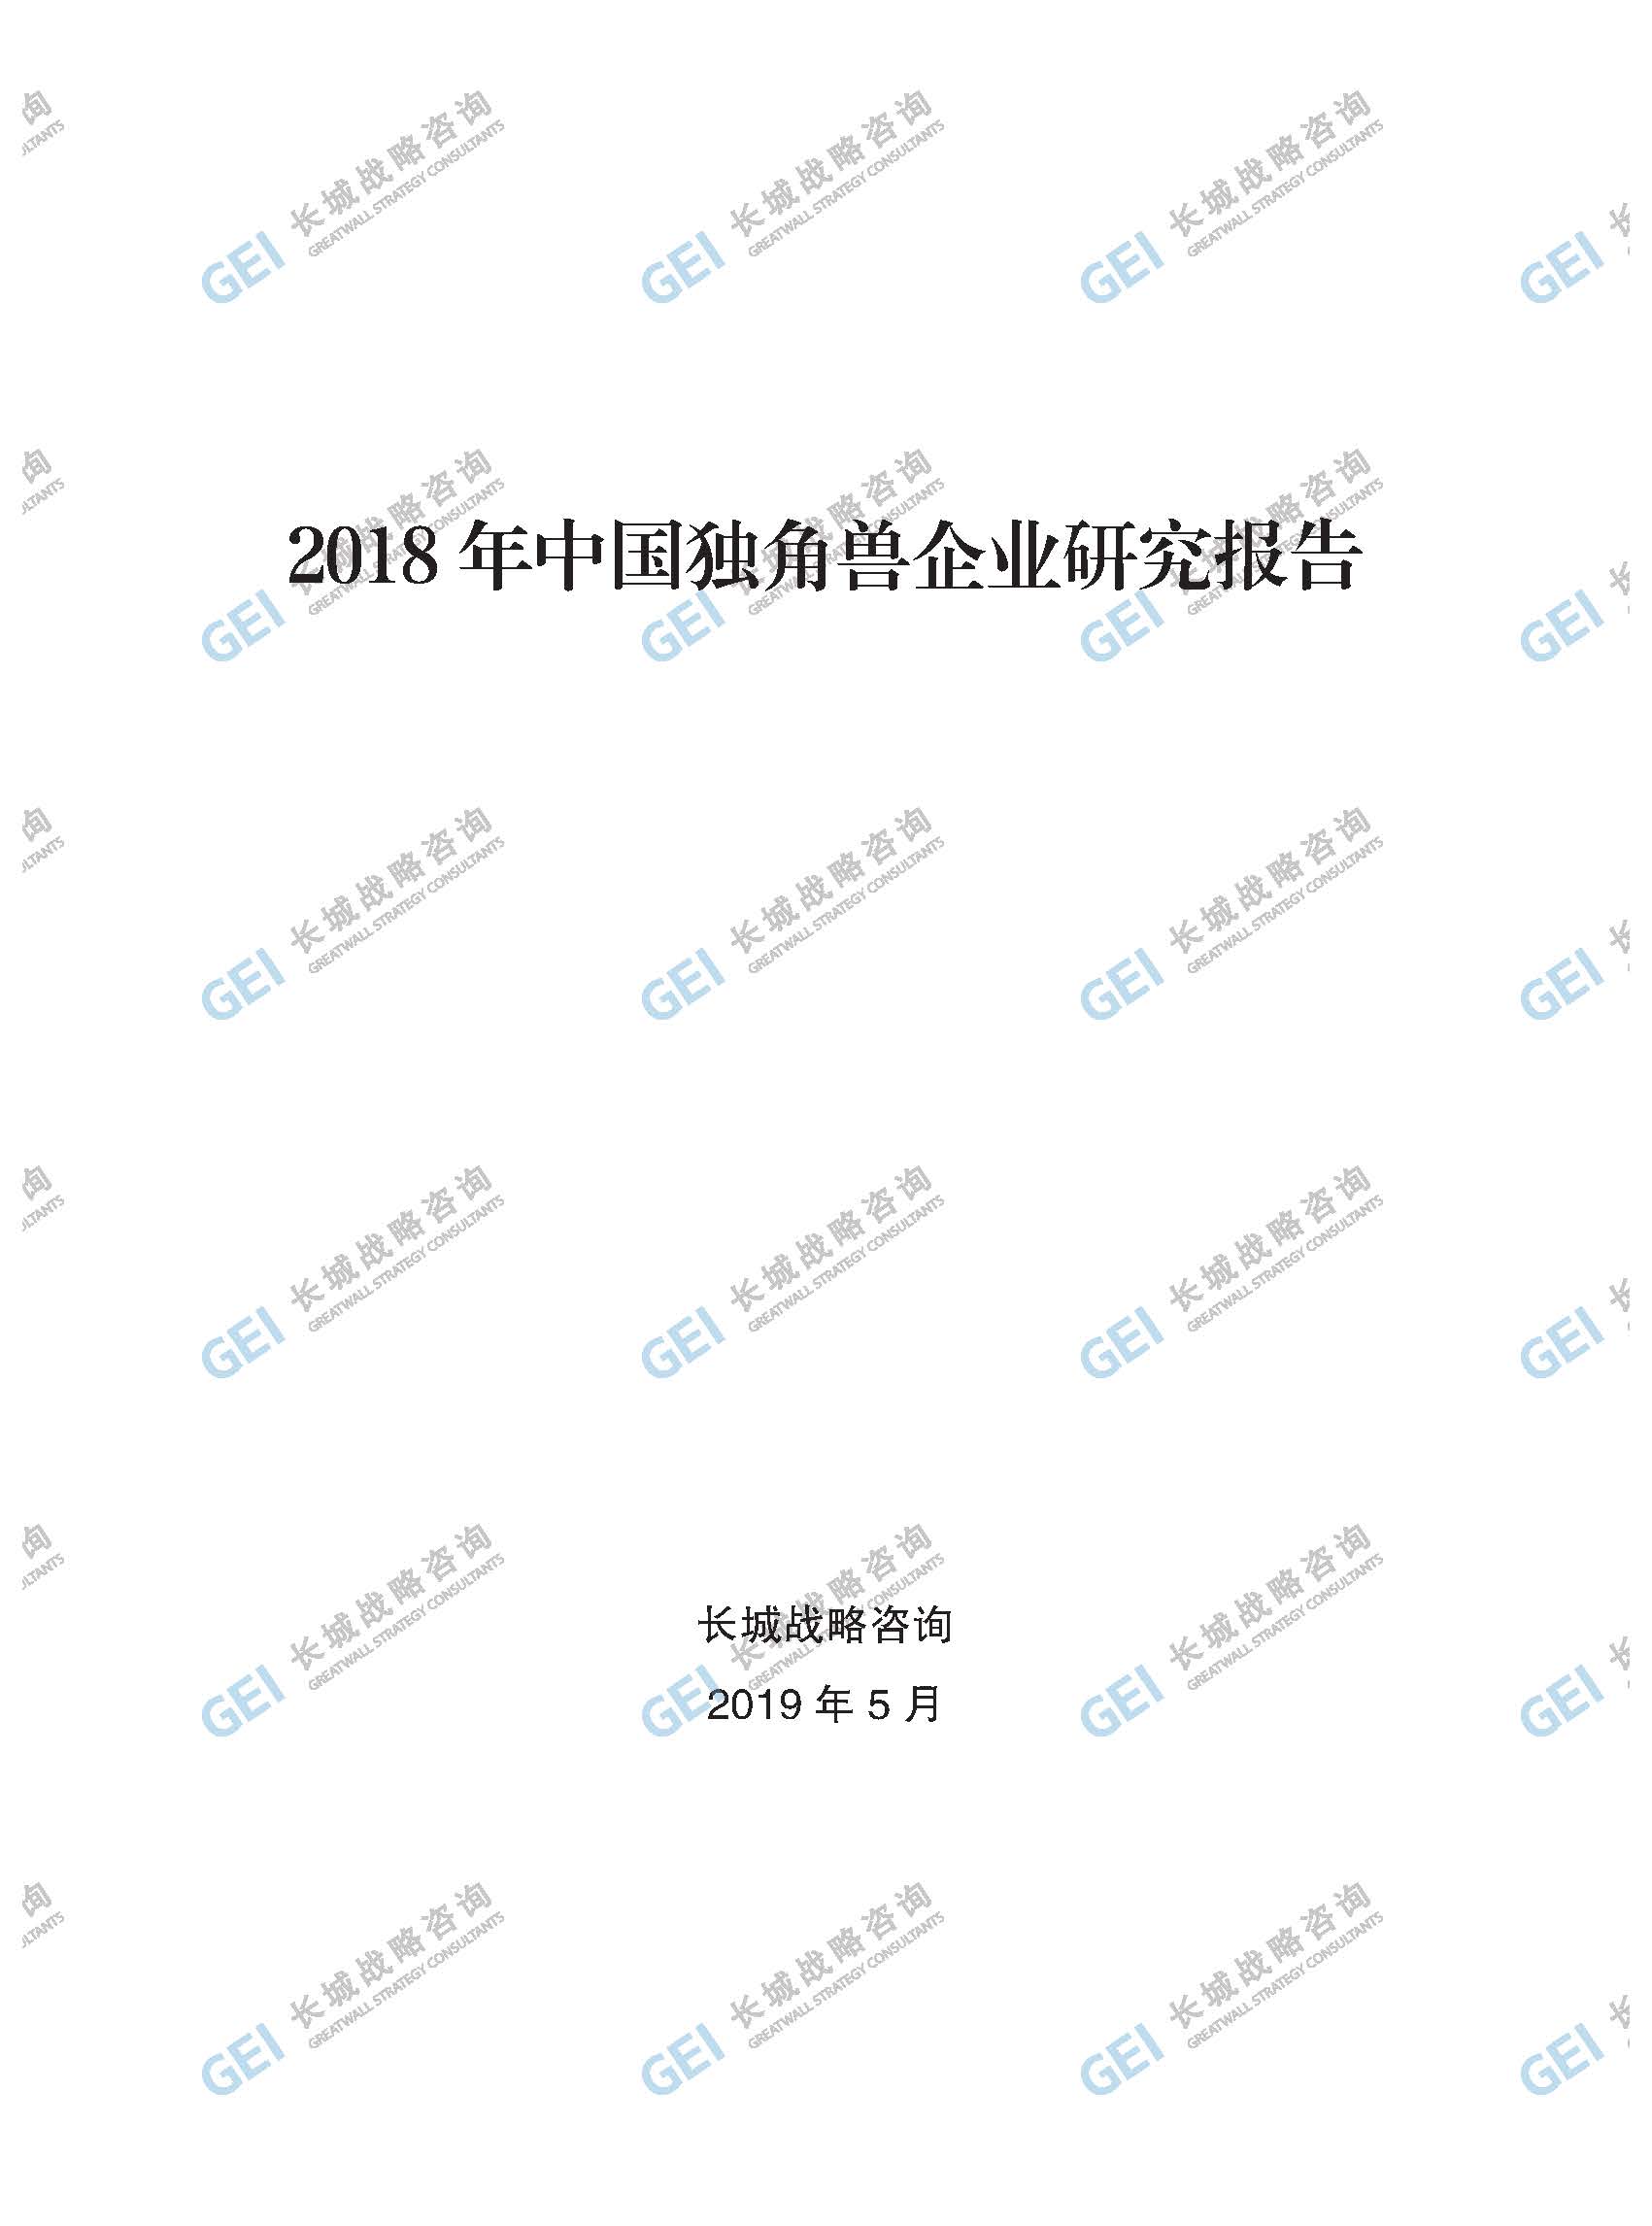 2018年中国独角兽企业研究报告-加水印-已压缩_页面_001.jpg